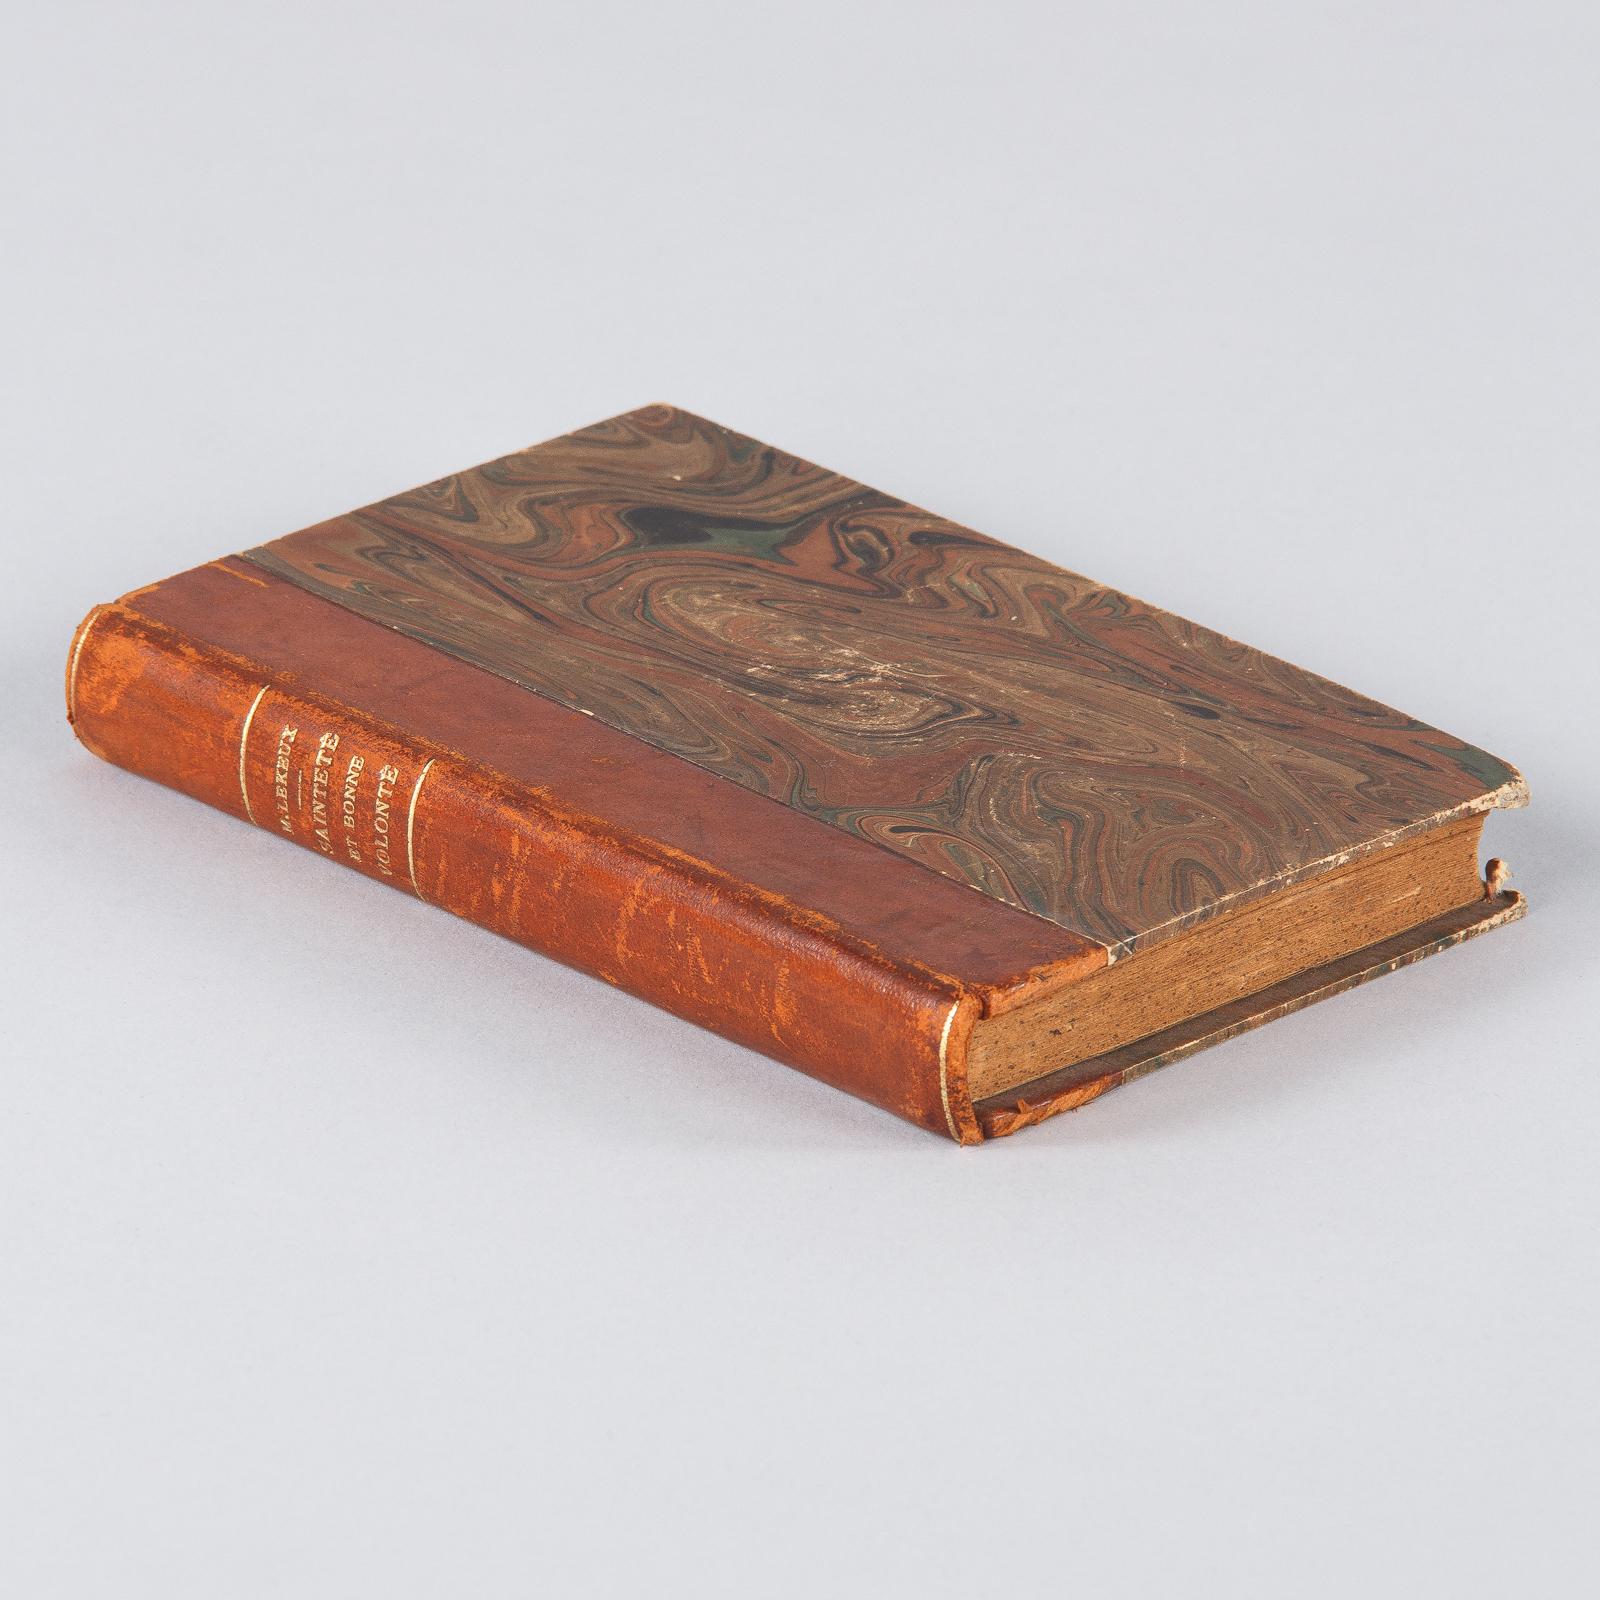 Leather French Book Saintete et Bonne Volonte by P. Martial Lekeux, 1936